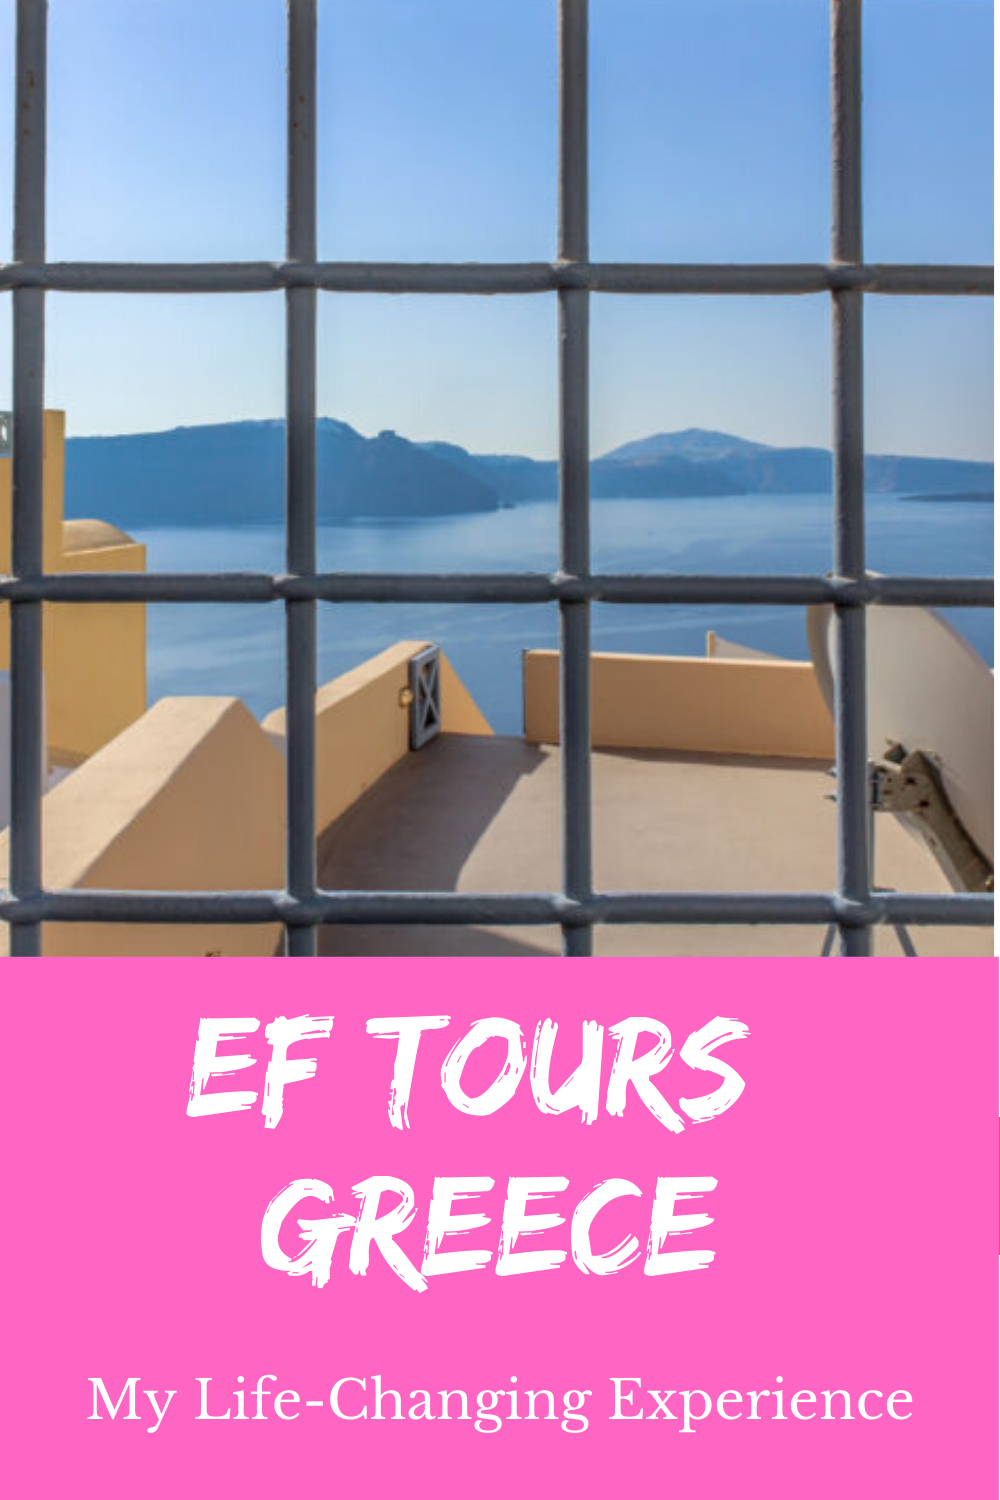 ef tours greece reviews